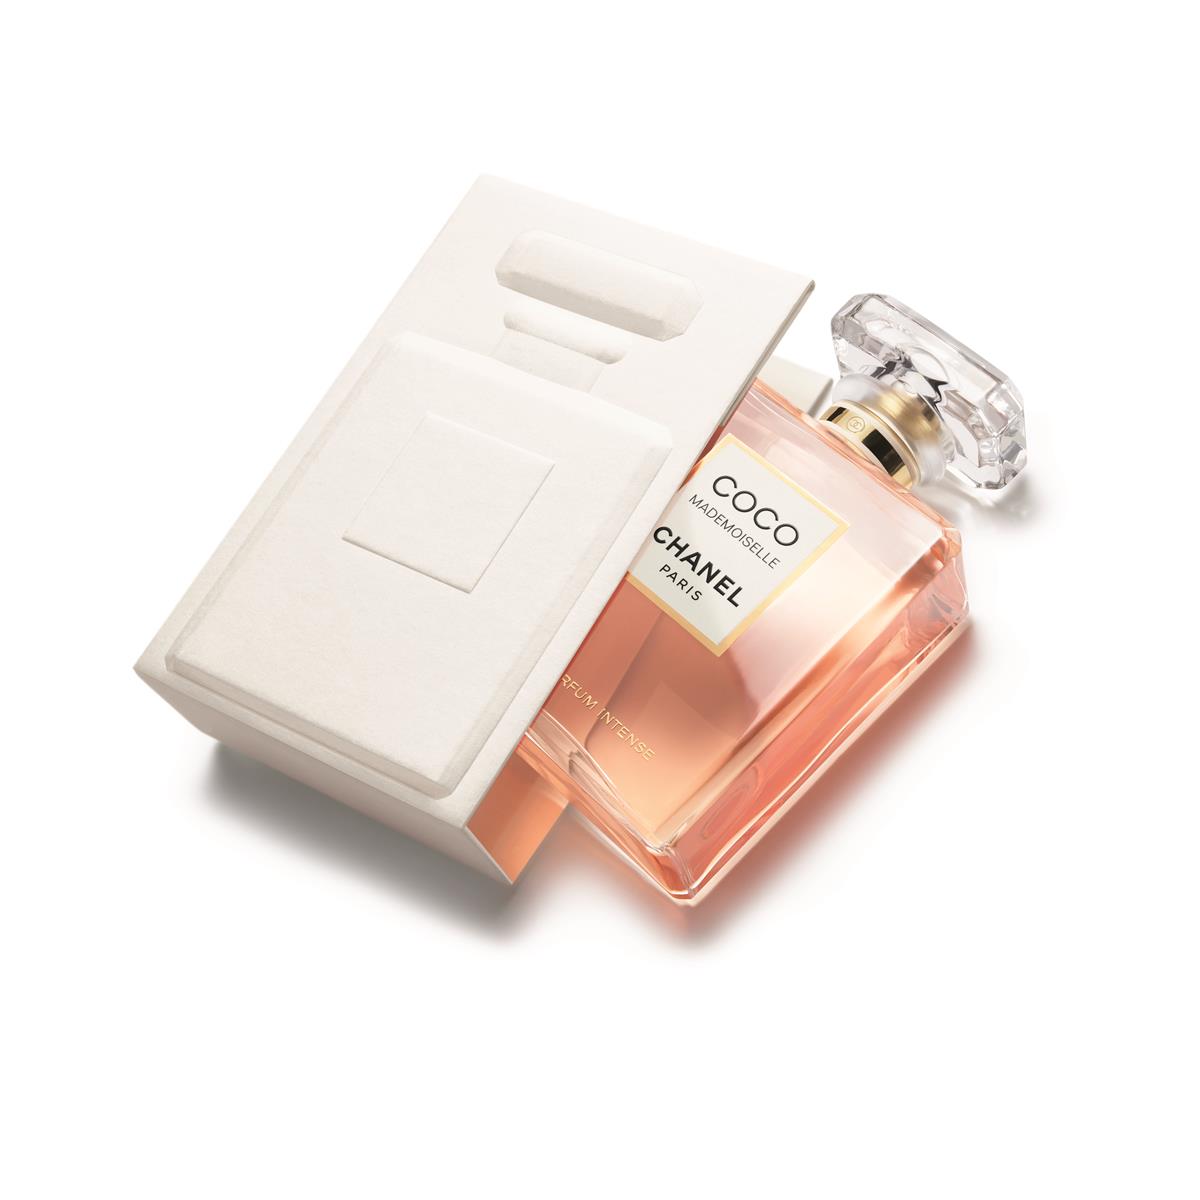 Keira Knightley Chanel n. 5 new fragrance